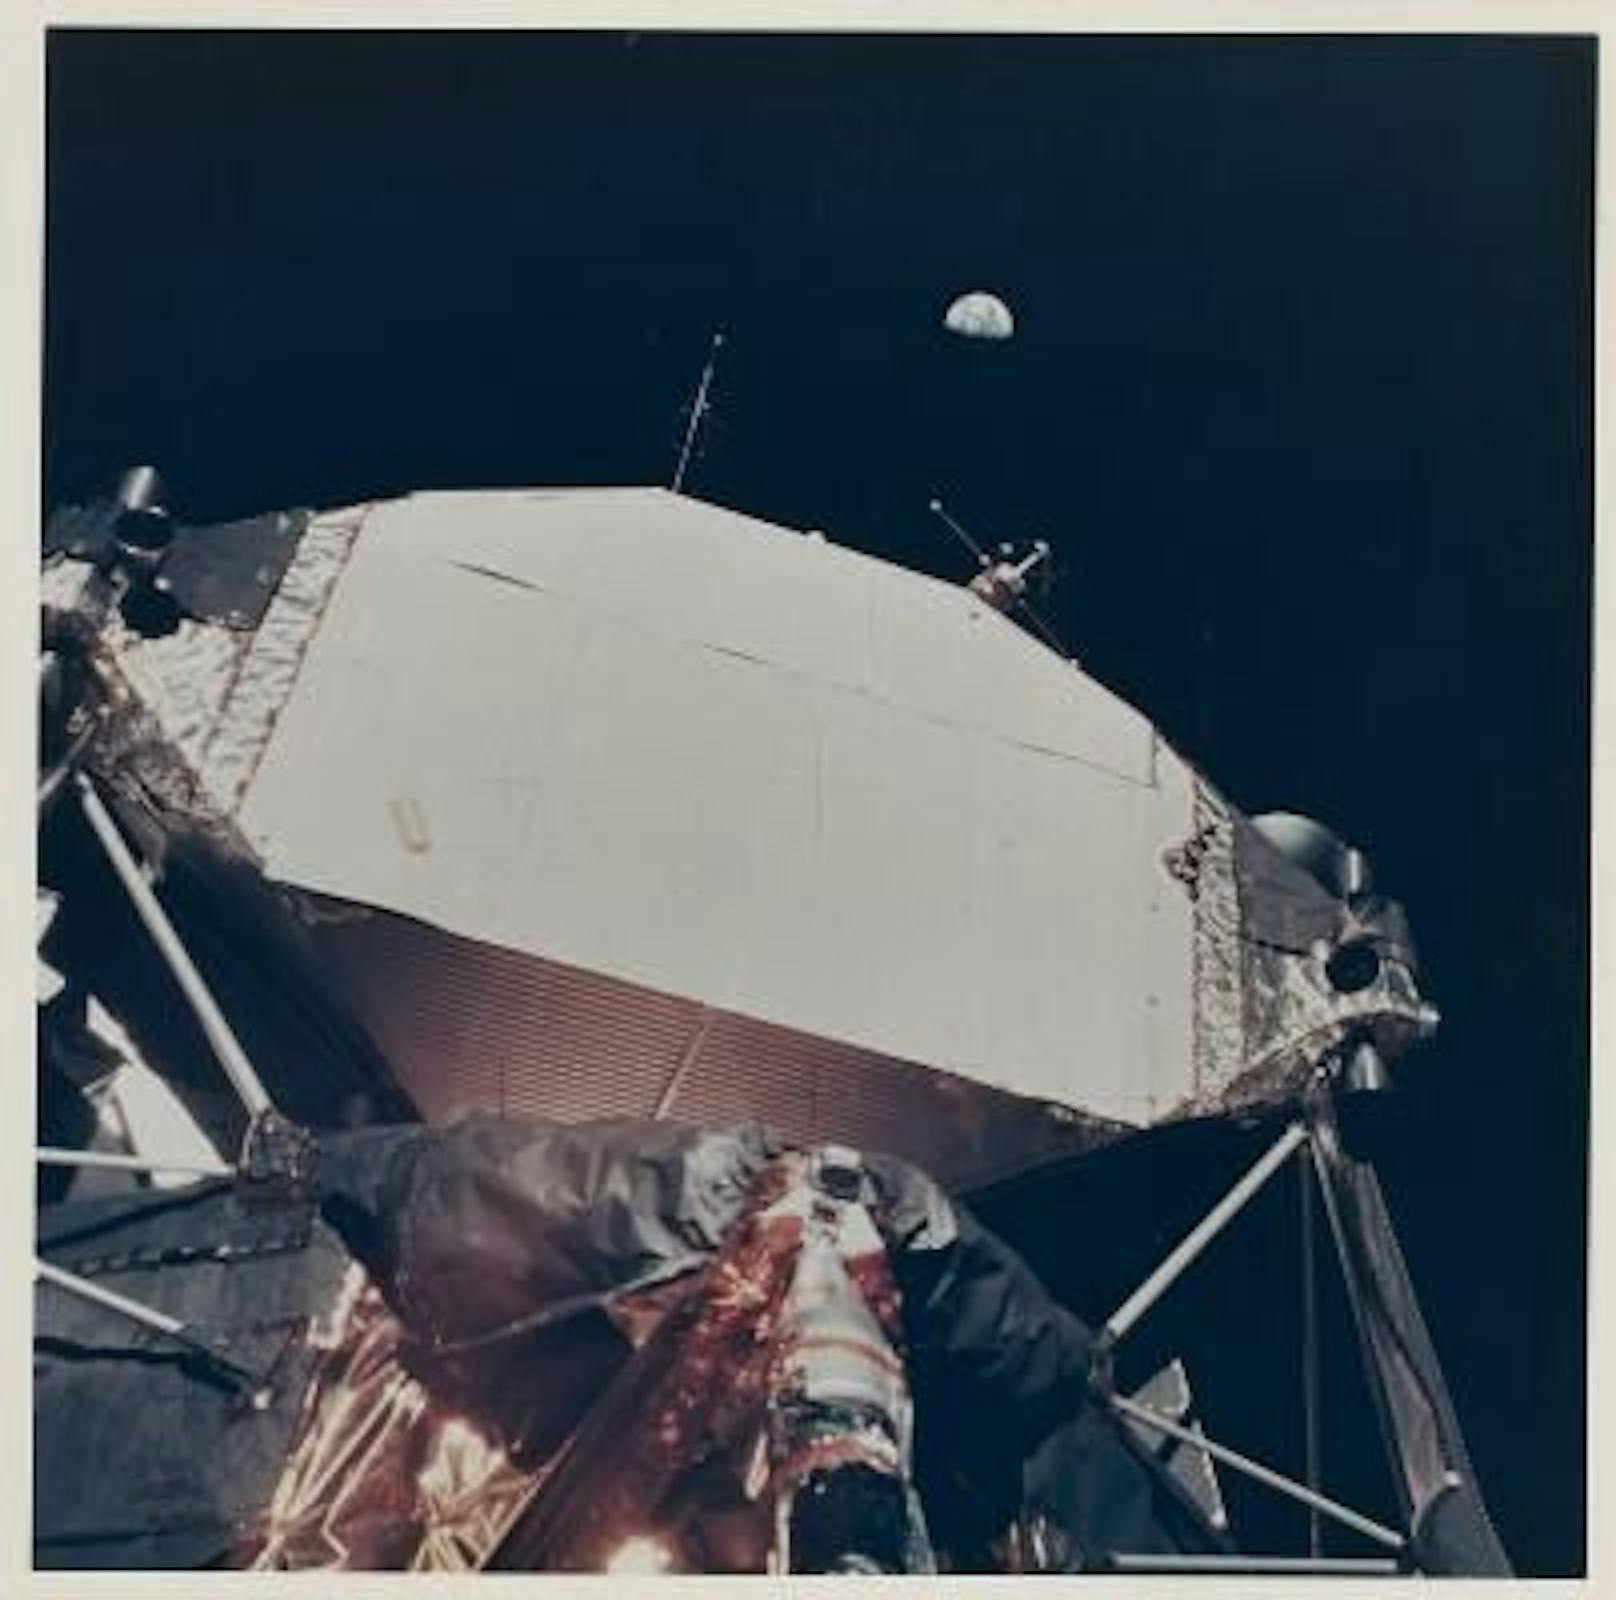 Apollo 11: Die Erde zum ersten Mal von Menschen von der Mondoberfläche aus gesehen. Erzielter Preis: 7.000 DKK (940 Euro).